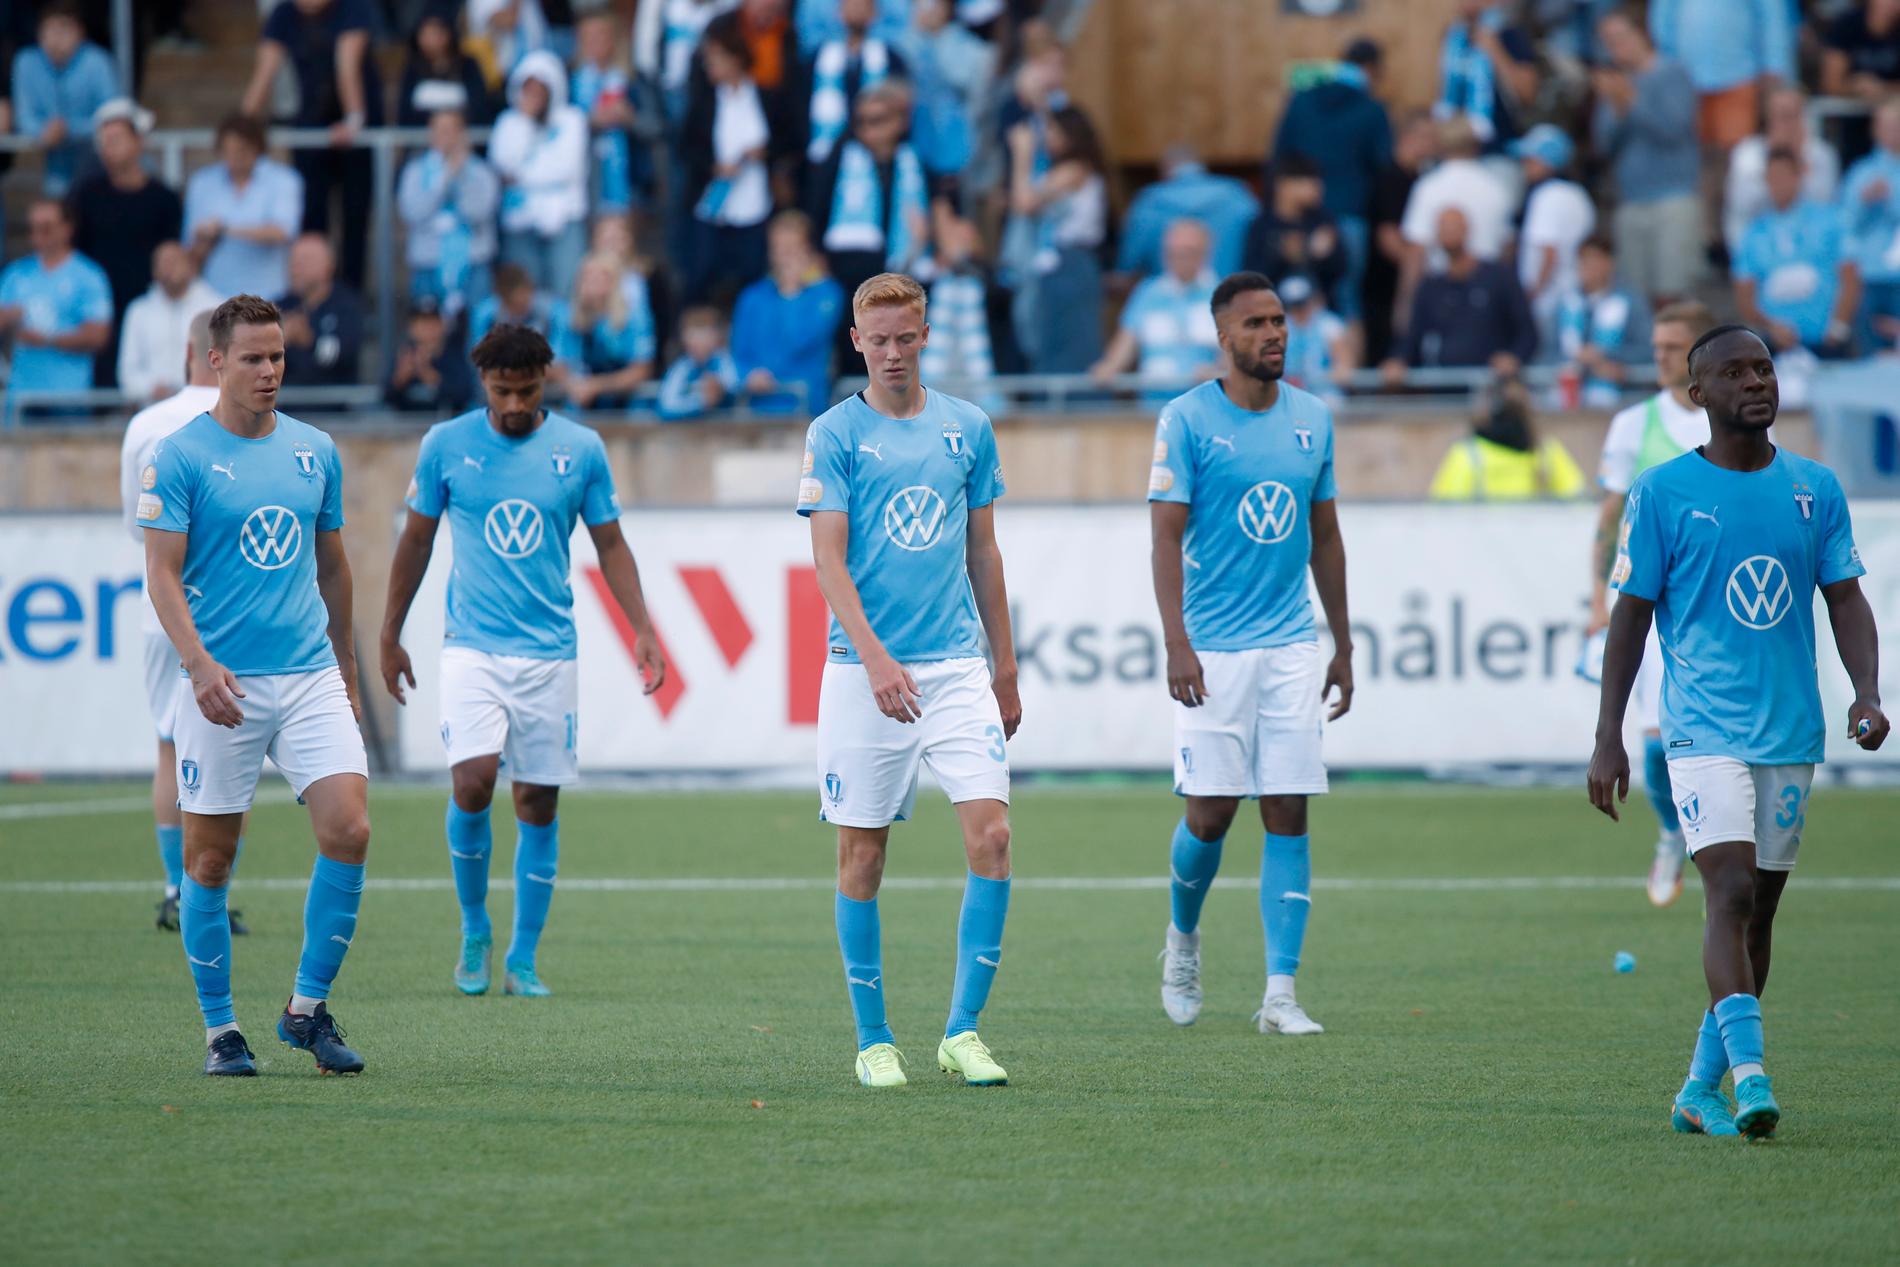 Besvikelse i Malmö FF efter förlust borta mot Sirius med 1–2.